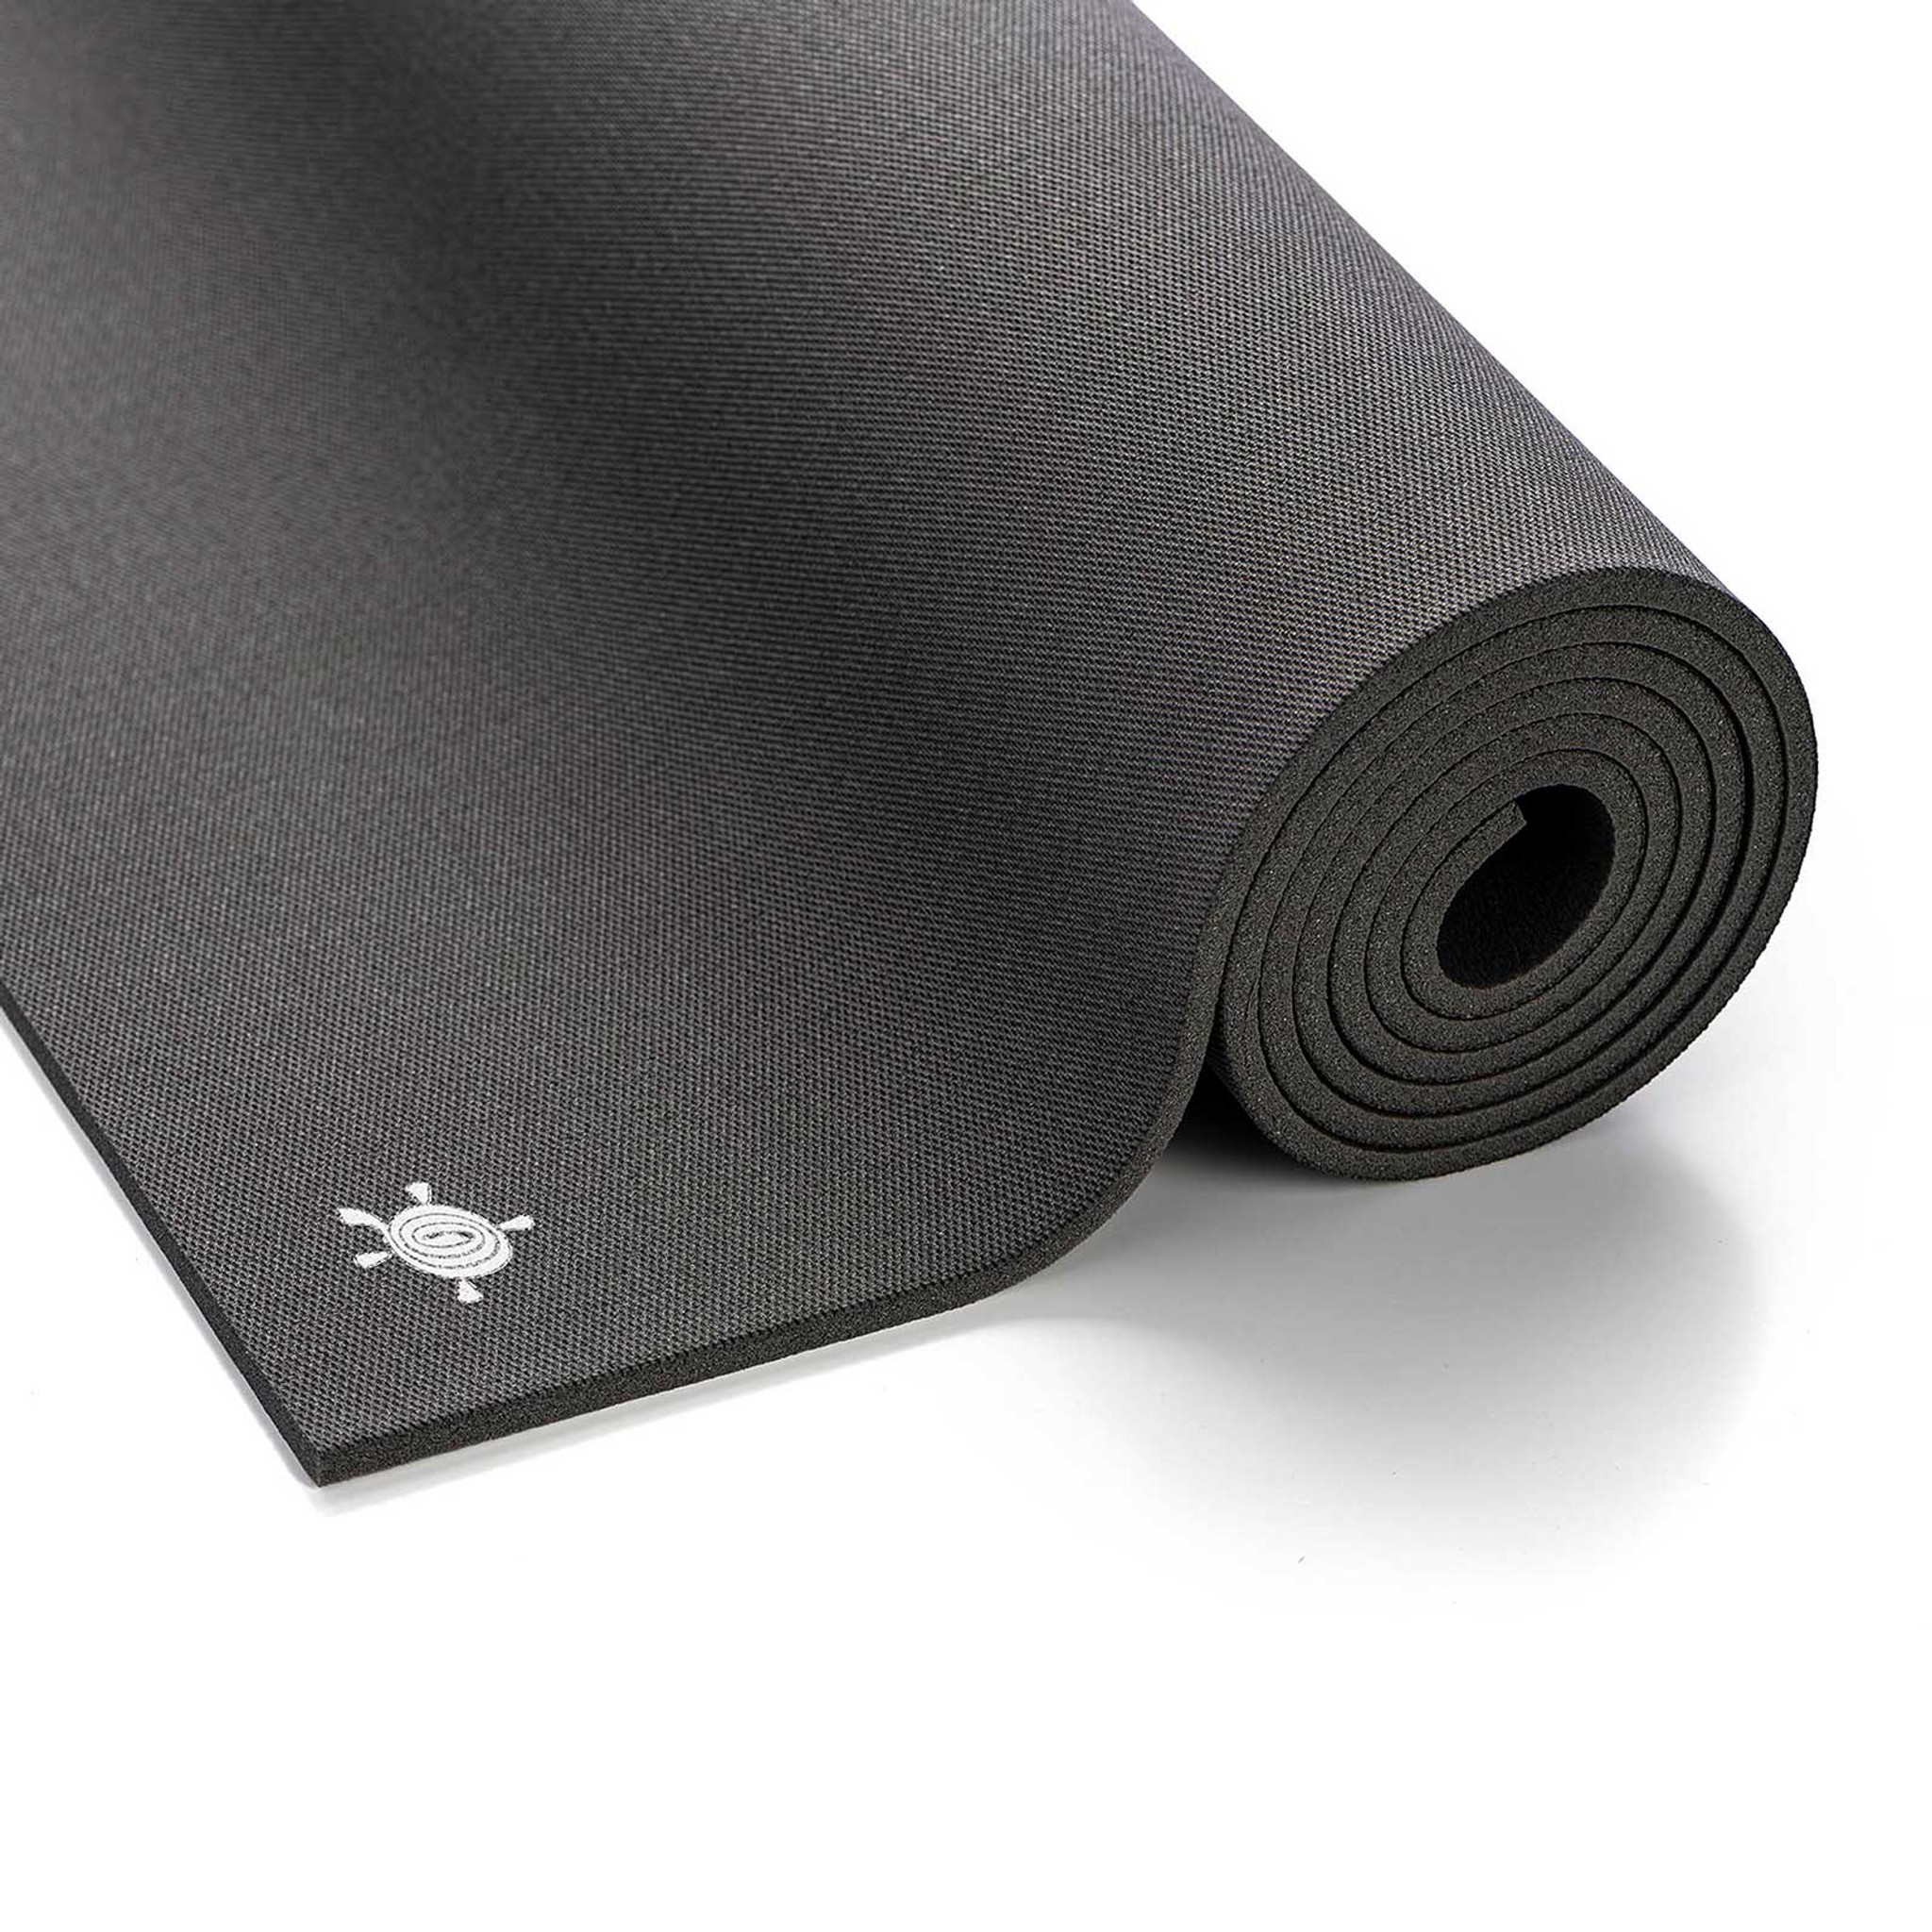 KURMA GRIP XL Yoga Mat